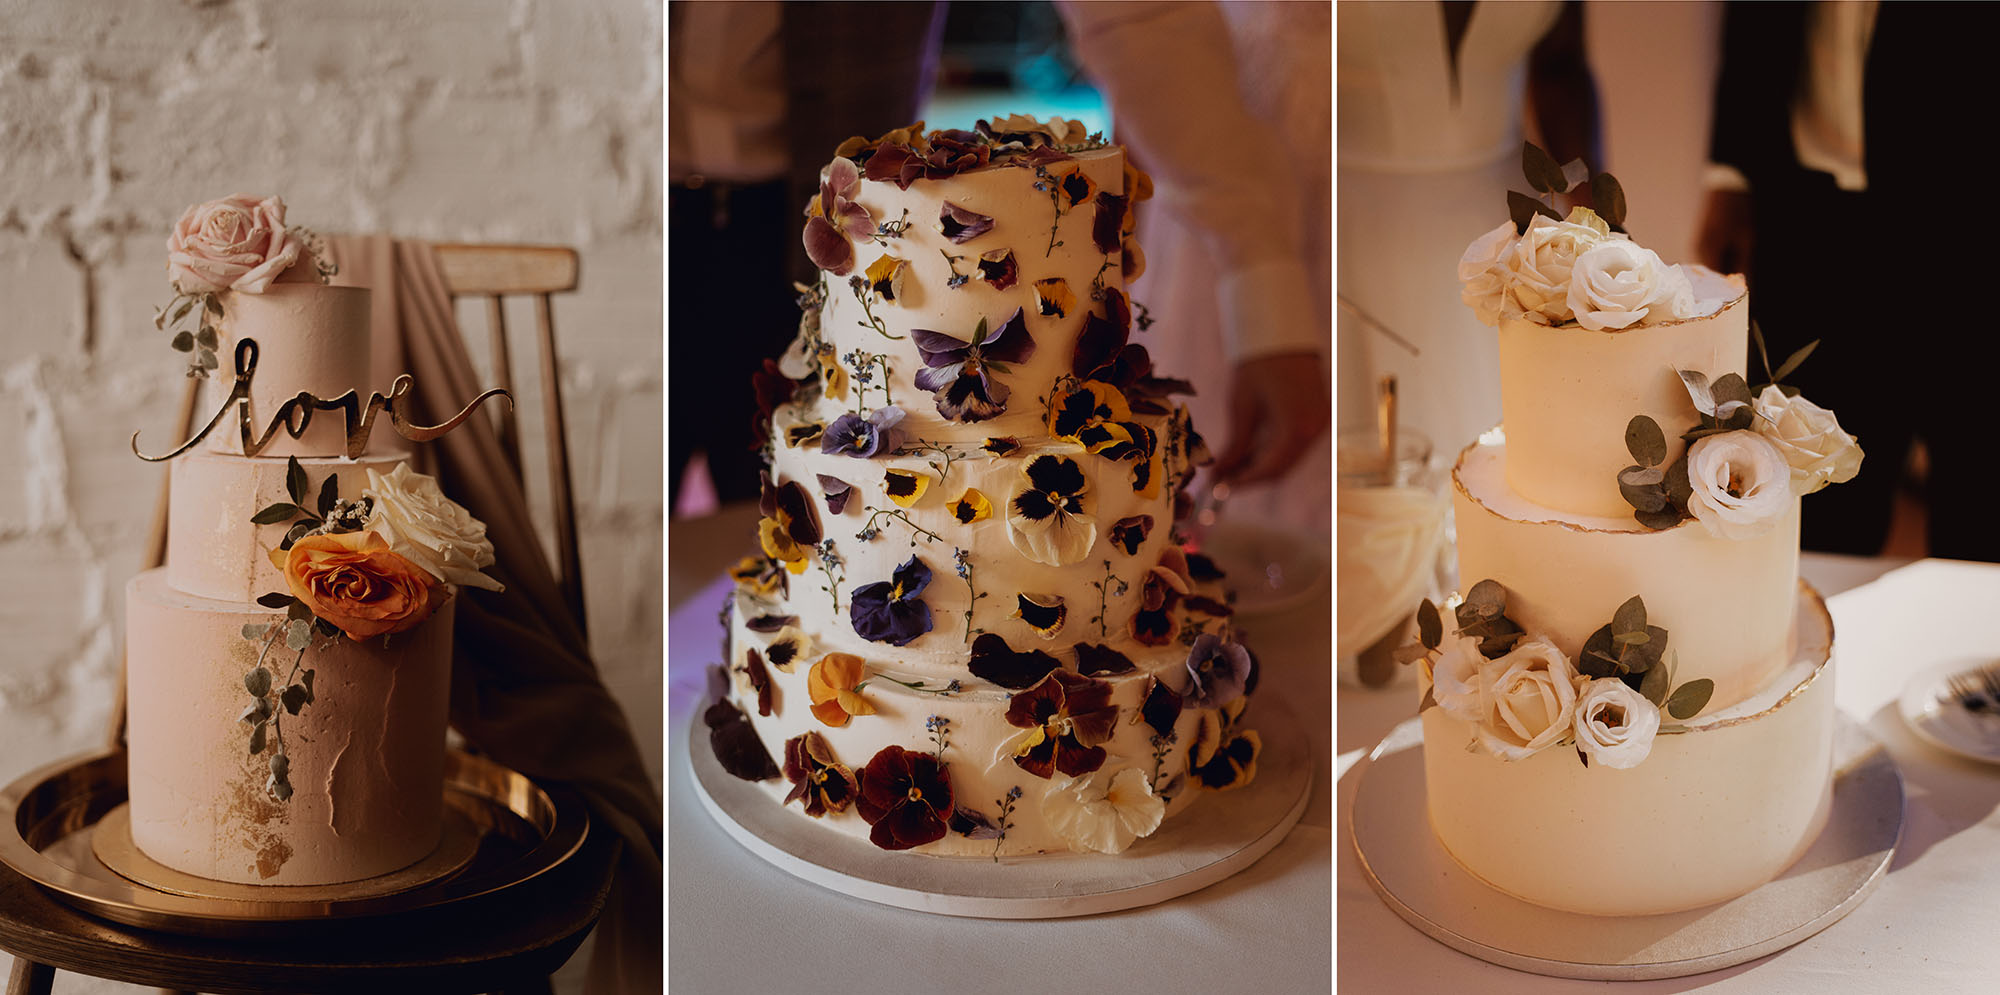 tort na wesele - 8 rzeczy, które nie wyglądają dobrze na zdjęciach i utrudniają pracę fotografa